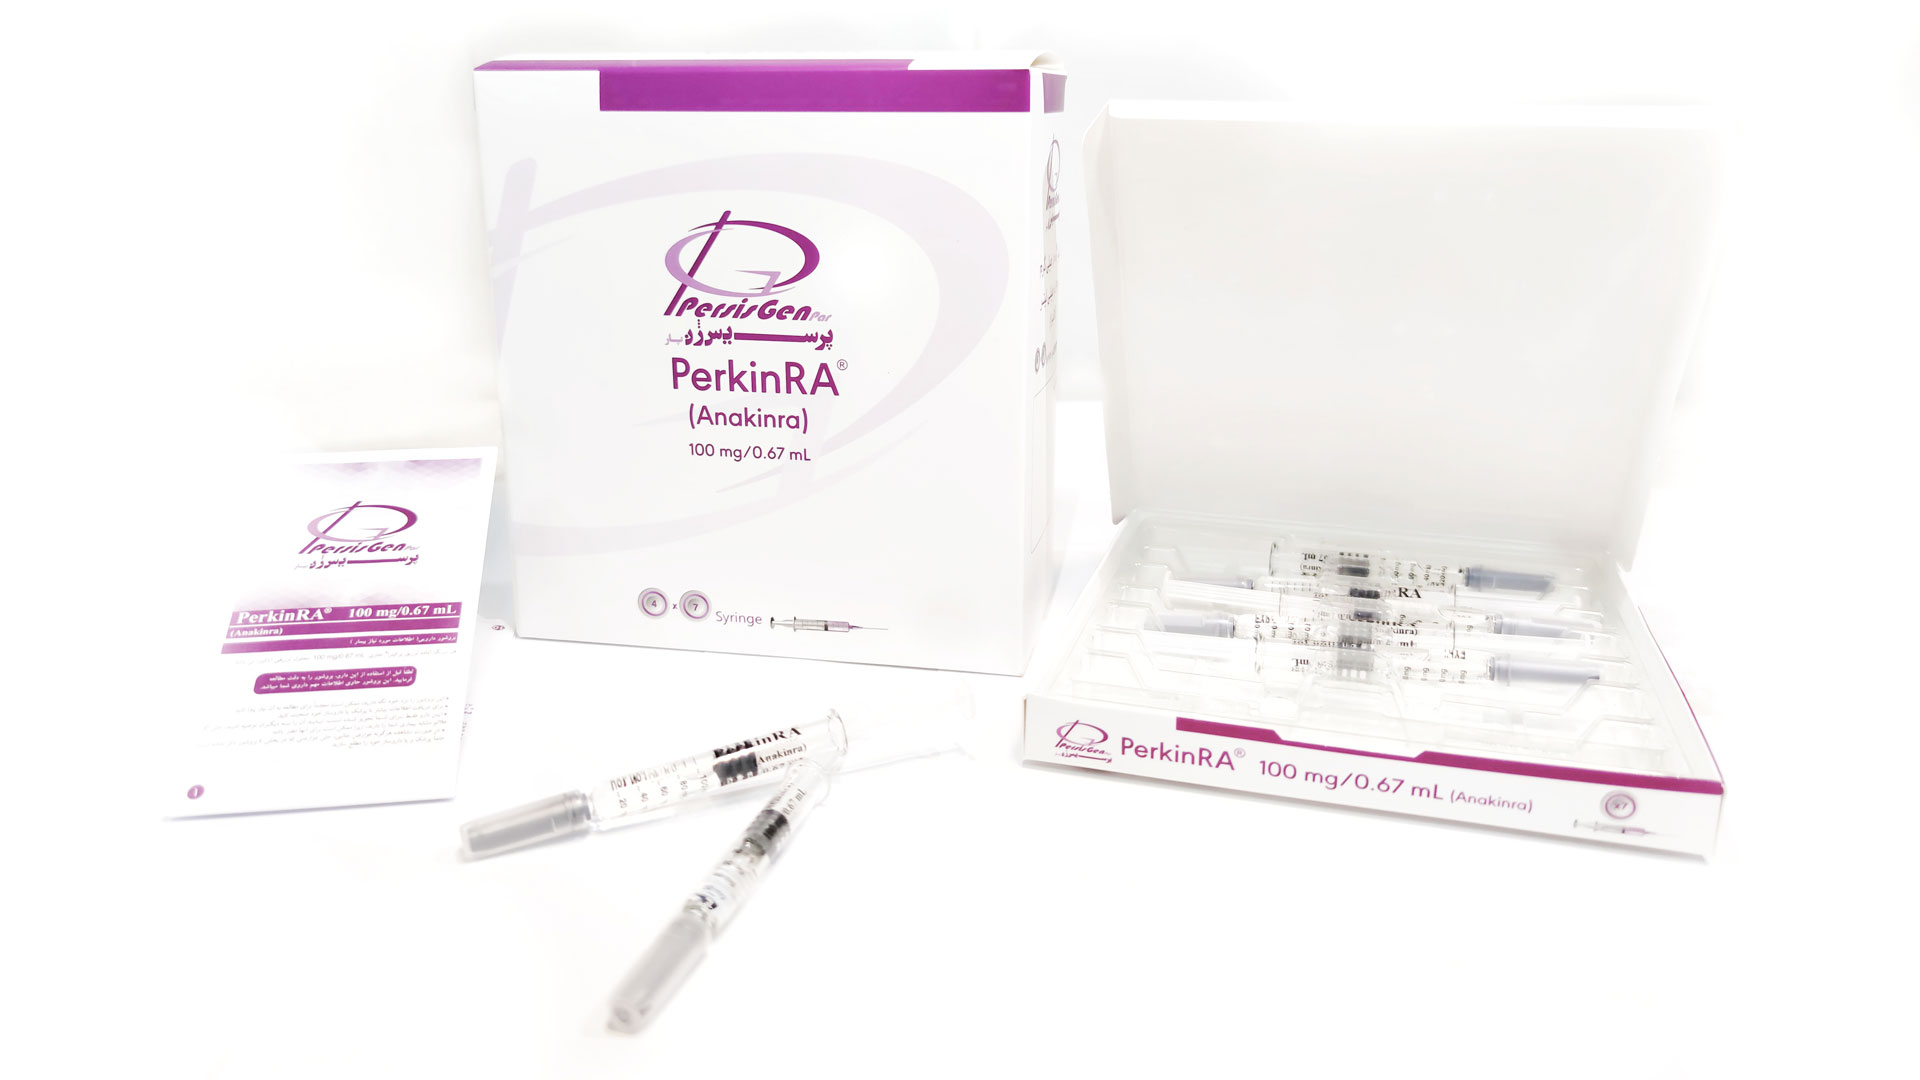 محصول جدید پرسیس ژن با نام تجاری PerkinRA